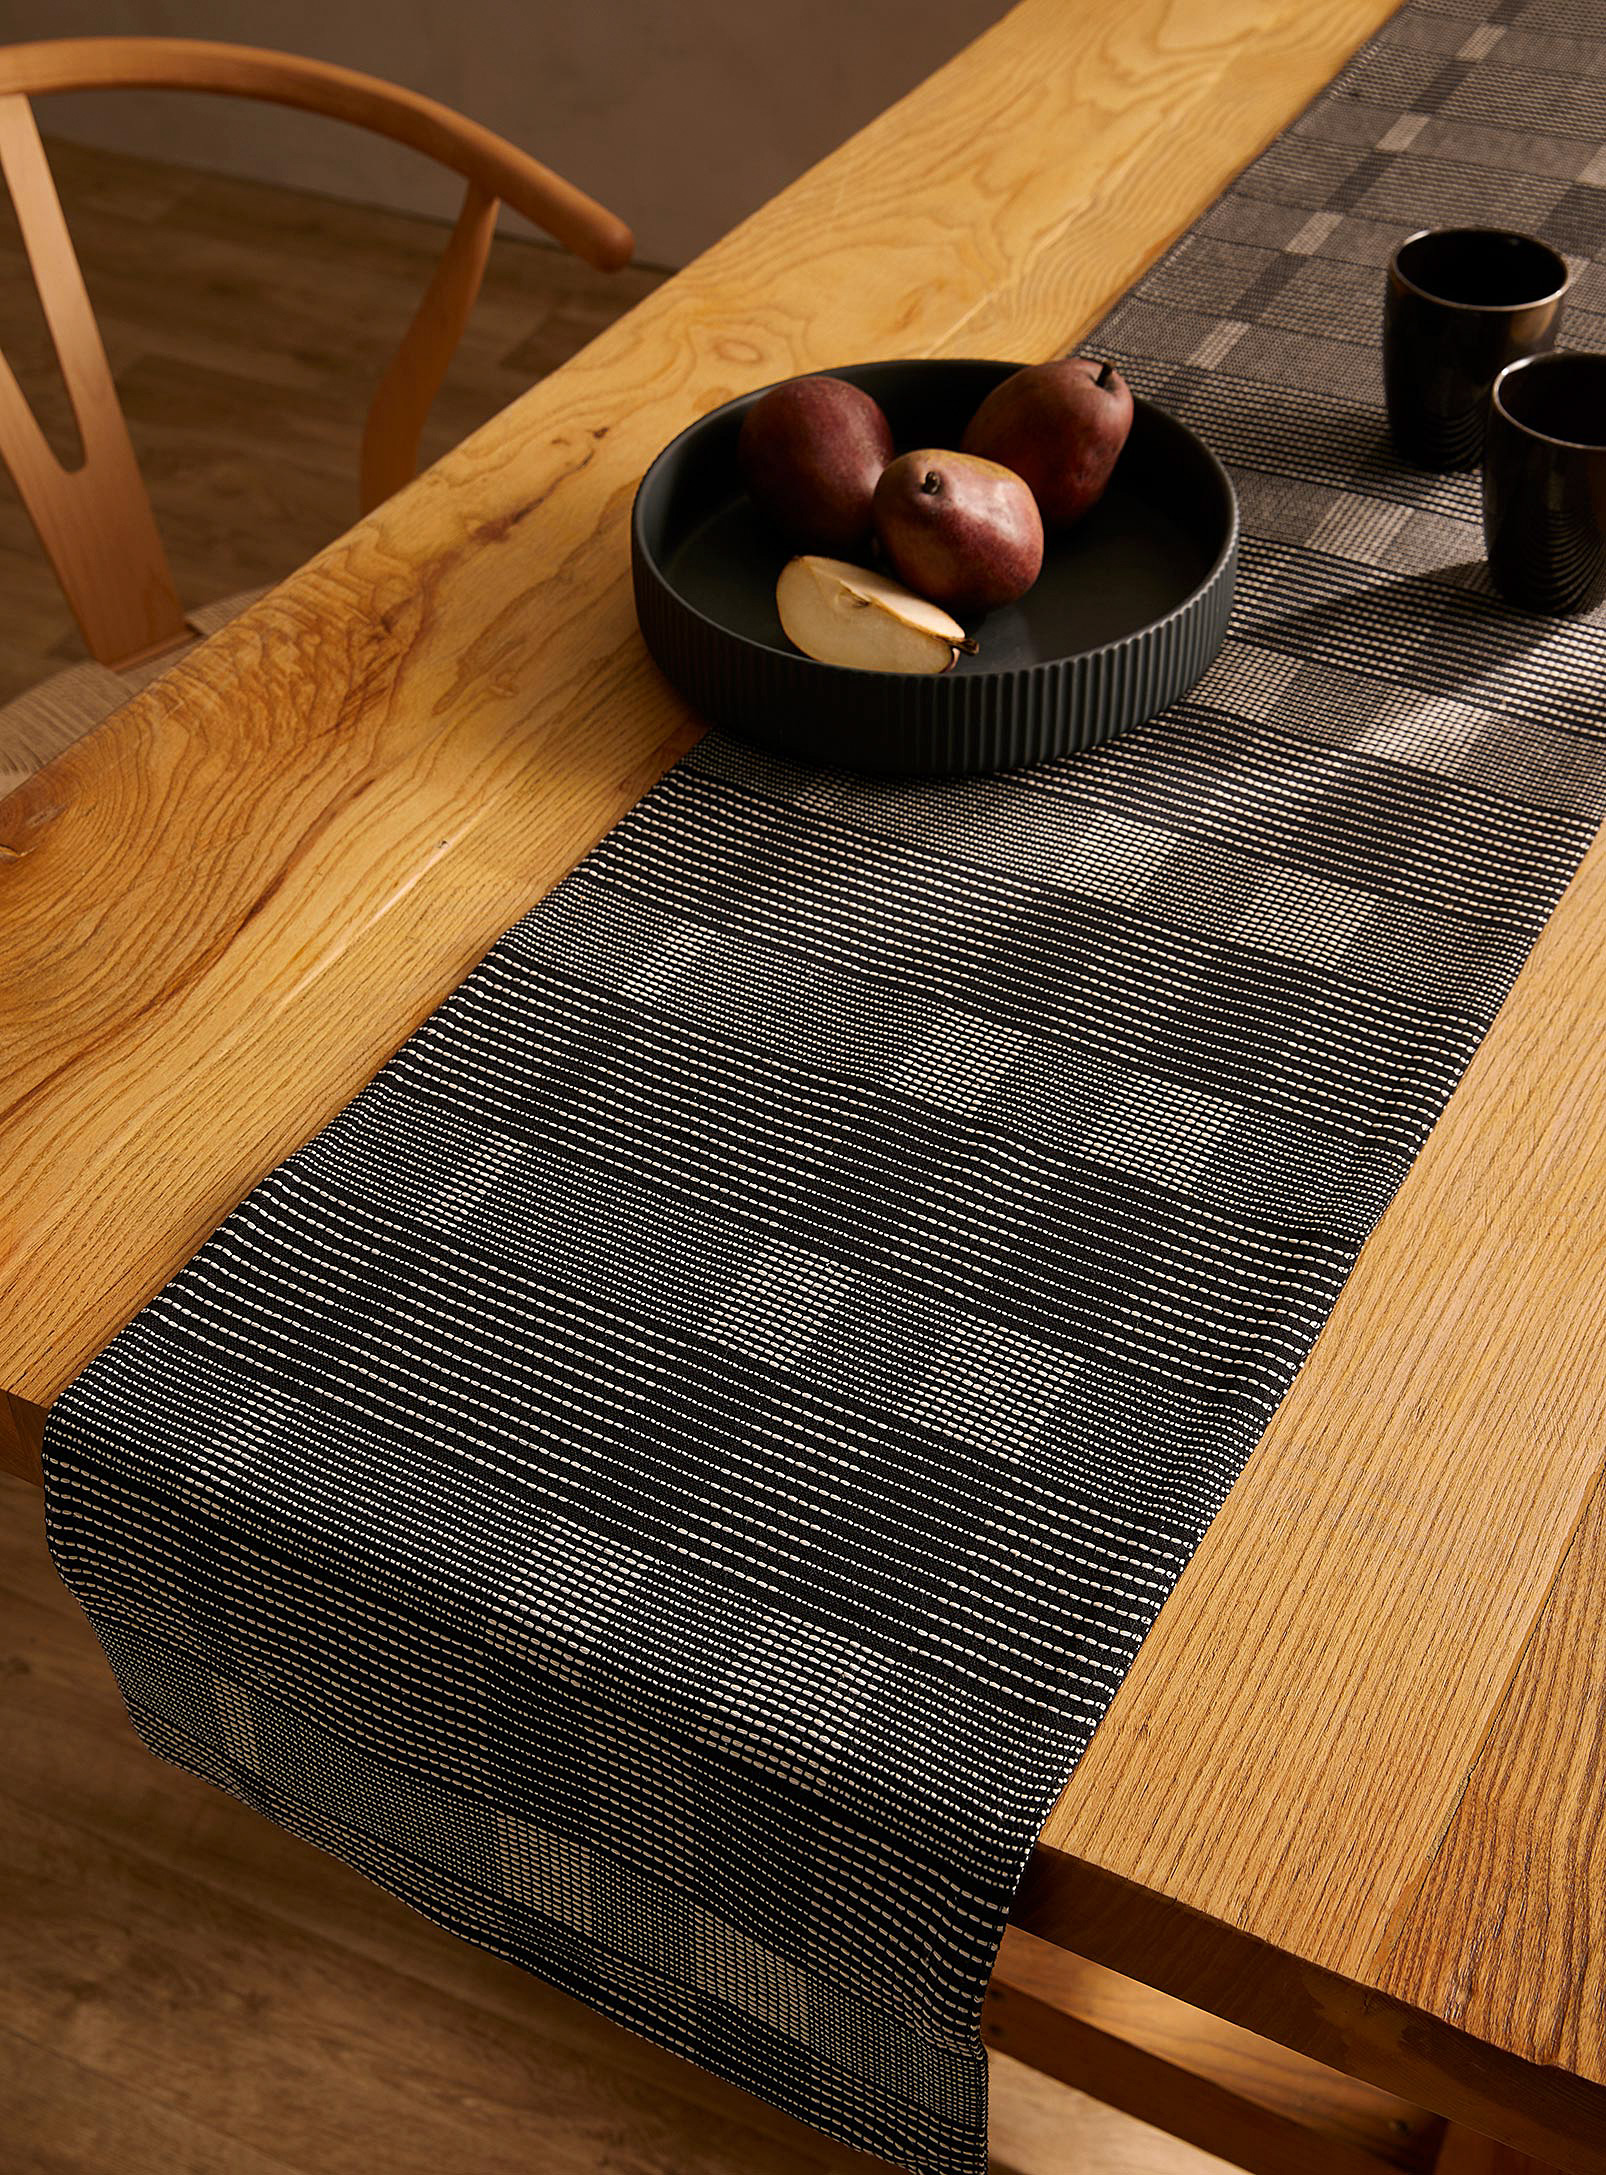 Simons Maison - Le chemin de table coton recyclé rectangles noirs Voir nos formats offerts